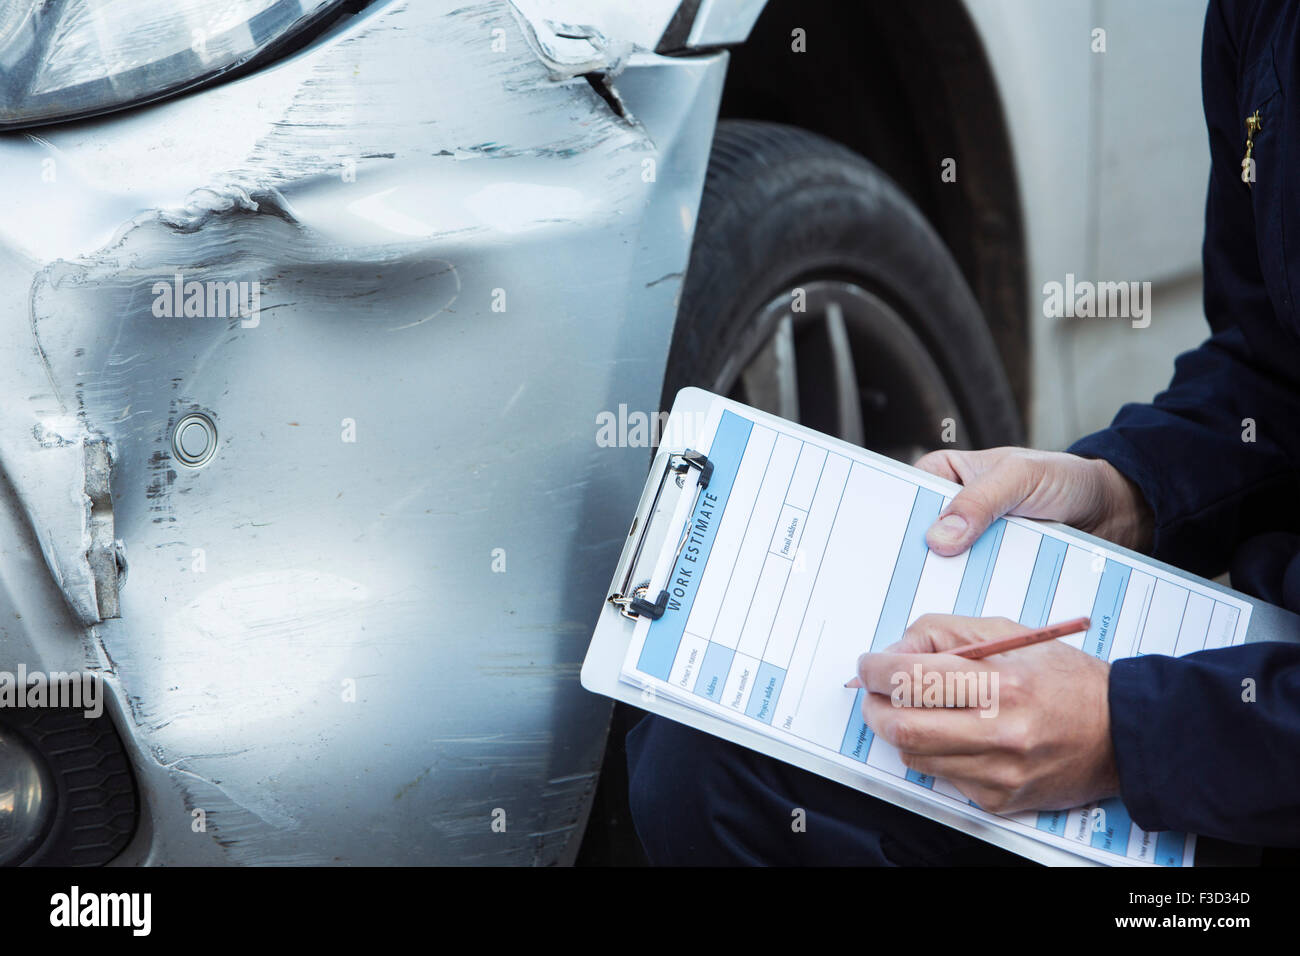 Automechaniker Workshop Inspektion Schäden An Fahrzeug Und Reparatur